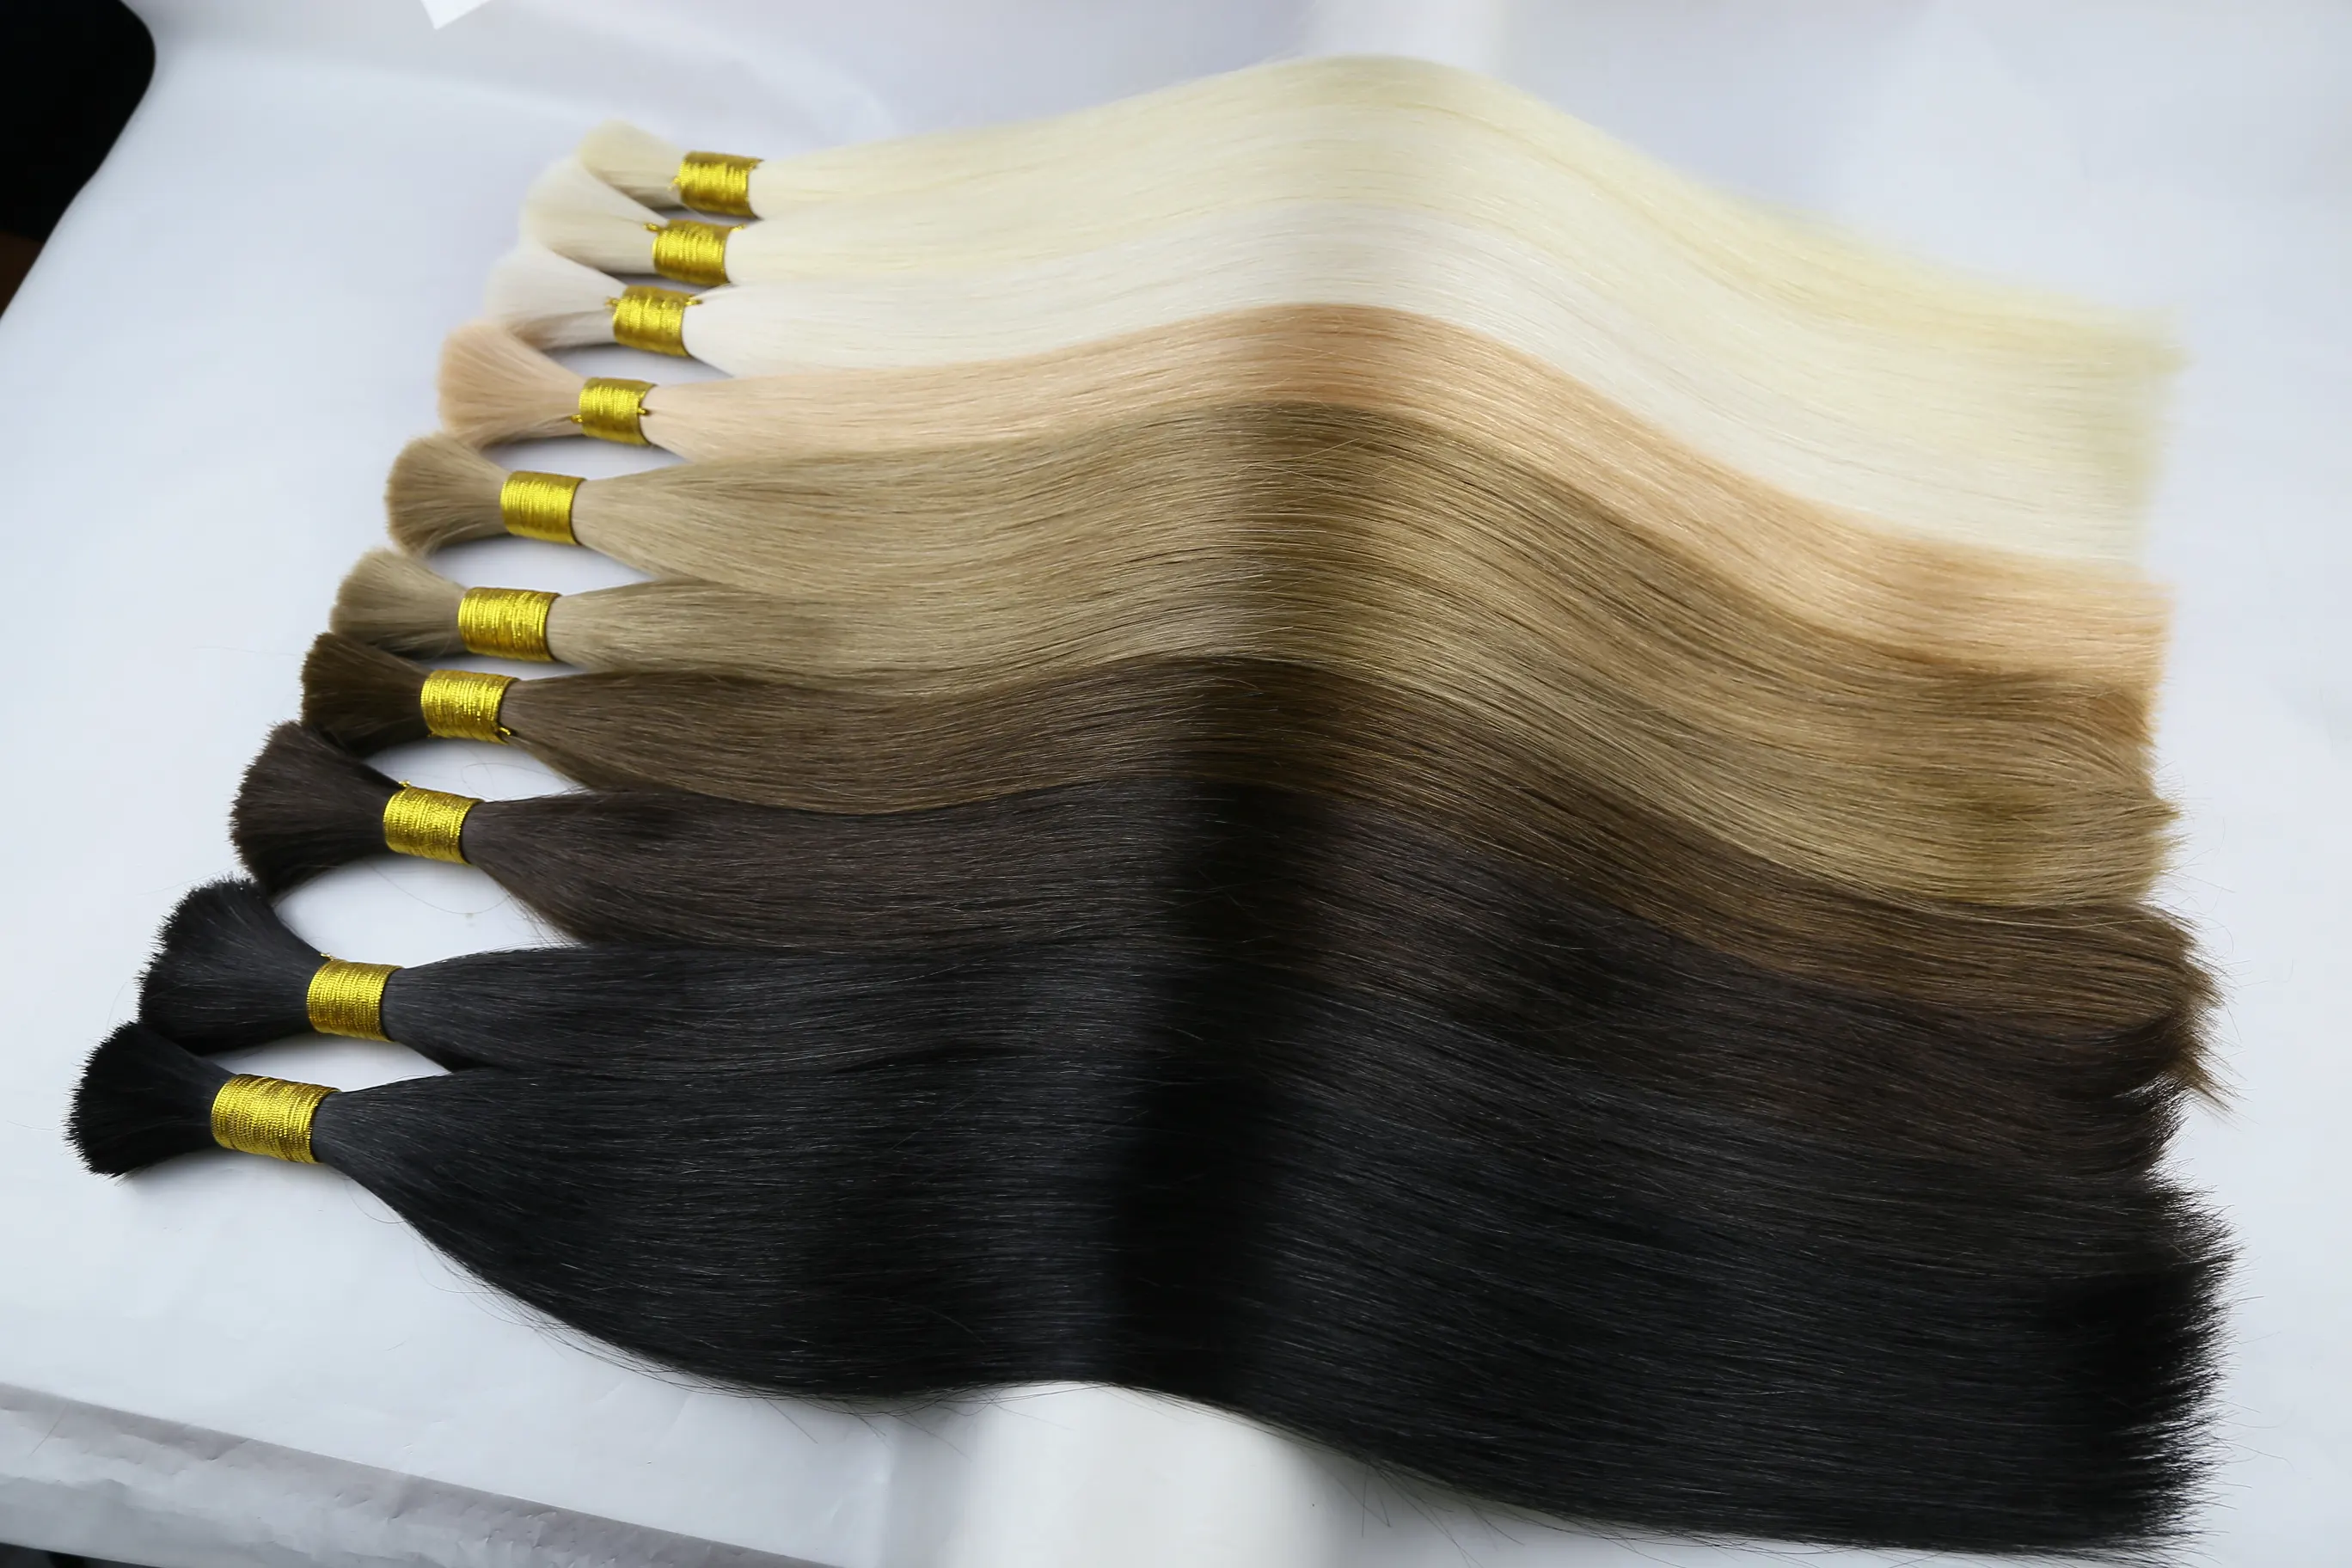 Maagdelijke Remy Human Hair Extensions Blonde Hair Bulk Extensions Maagd Onbewerkte 100% Natuurlijke Haarbulk Voor Extensions